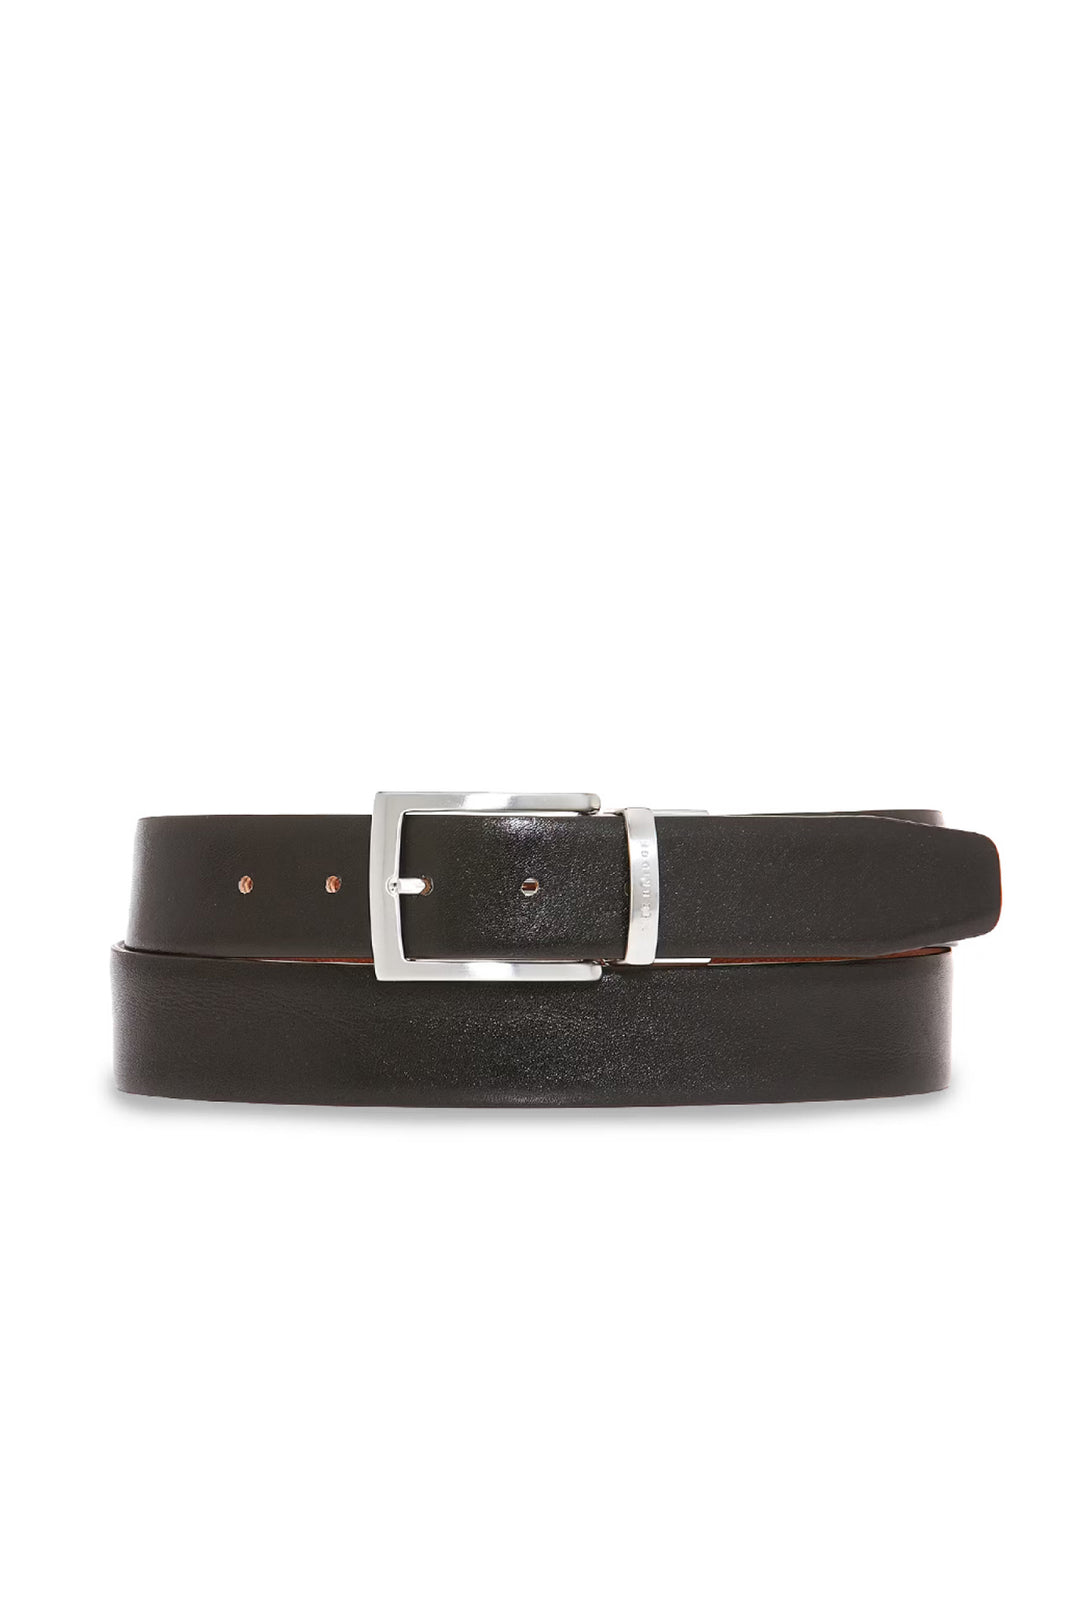 THE BRIDGE Cintura reversibile in pelle marrone e nera con fibbia color argento - Mancinelli 1954